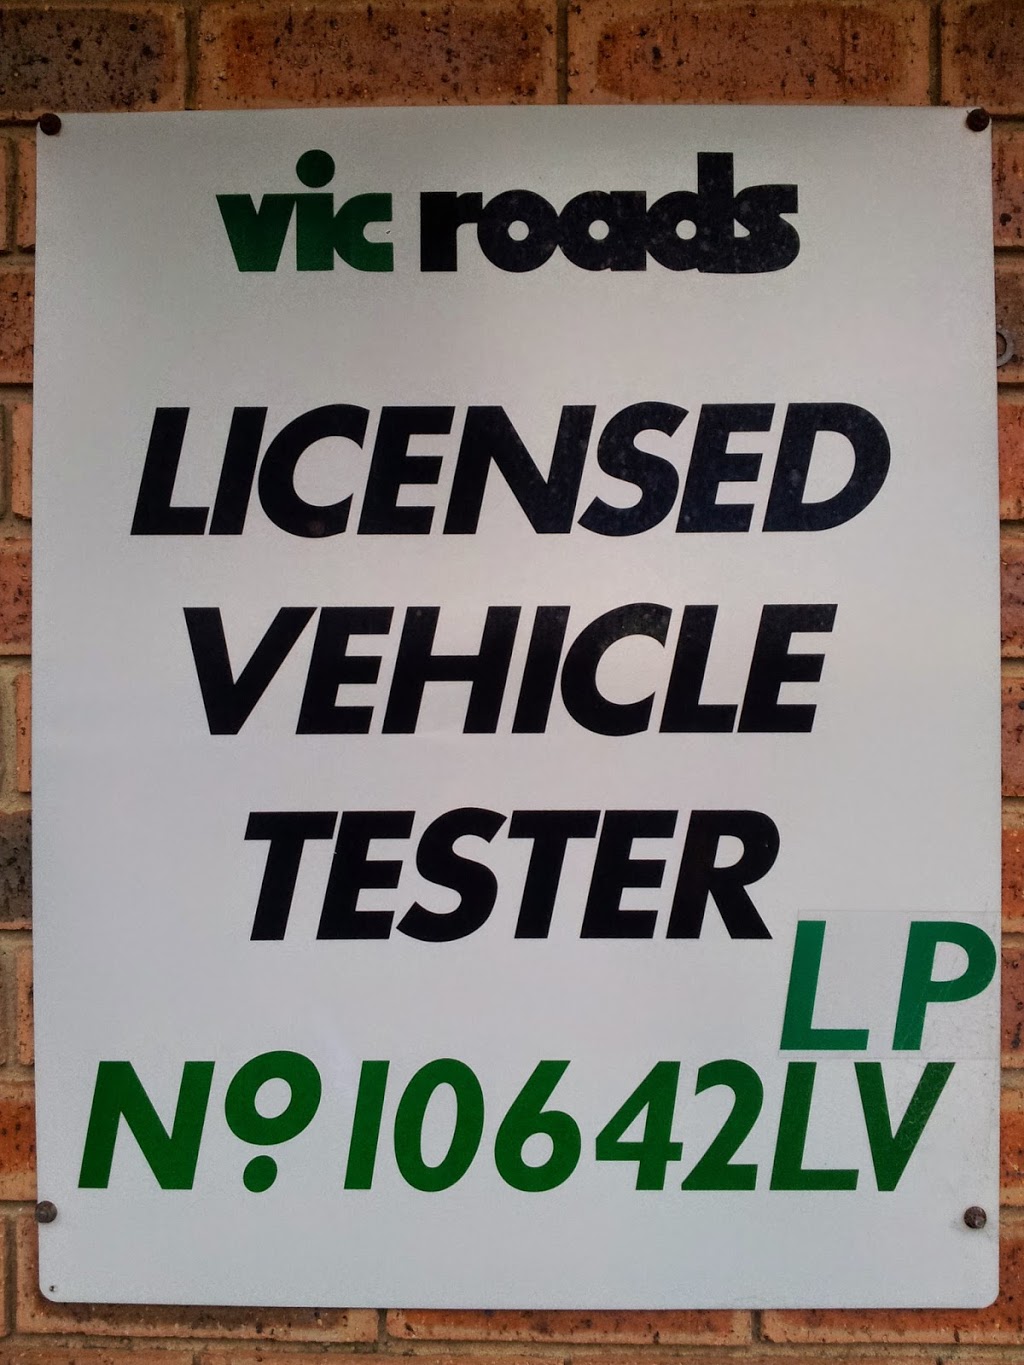 R S Auto Care Pty Ltd | car repair | 6 Purton Rd, Pakenham VIC 3810, Australia | 0359412743 OR +61 3 5941 2743